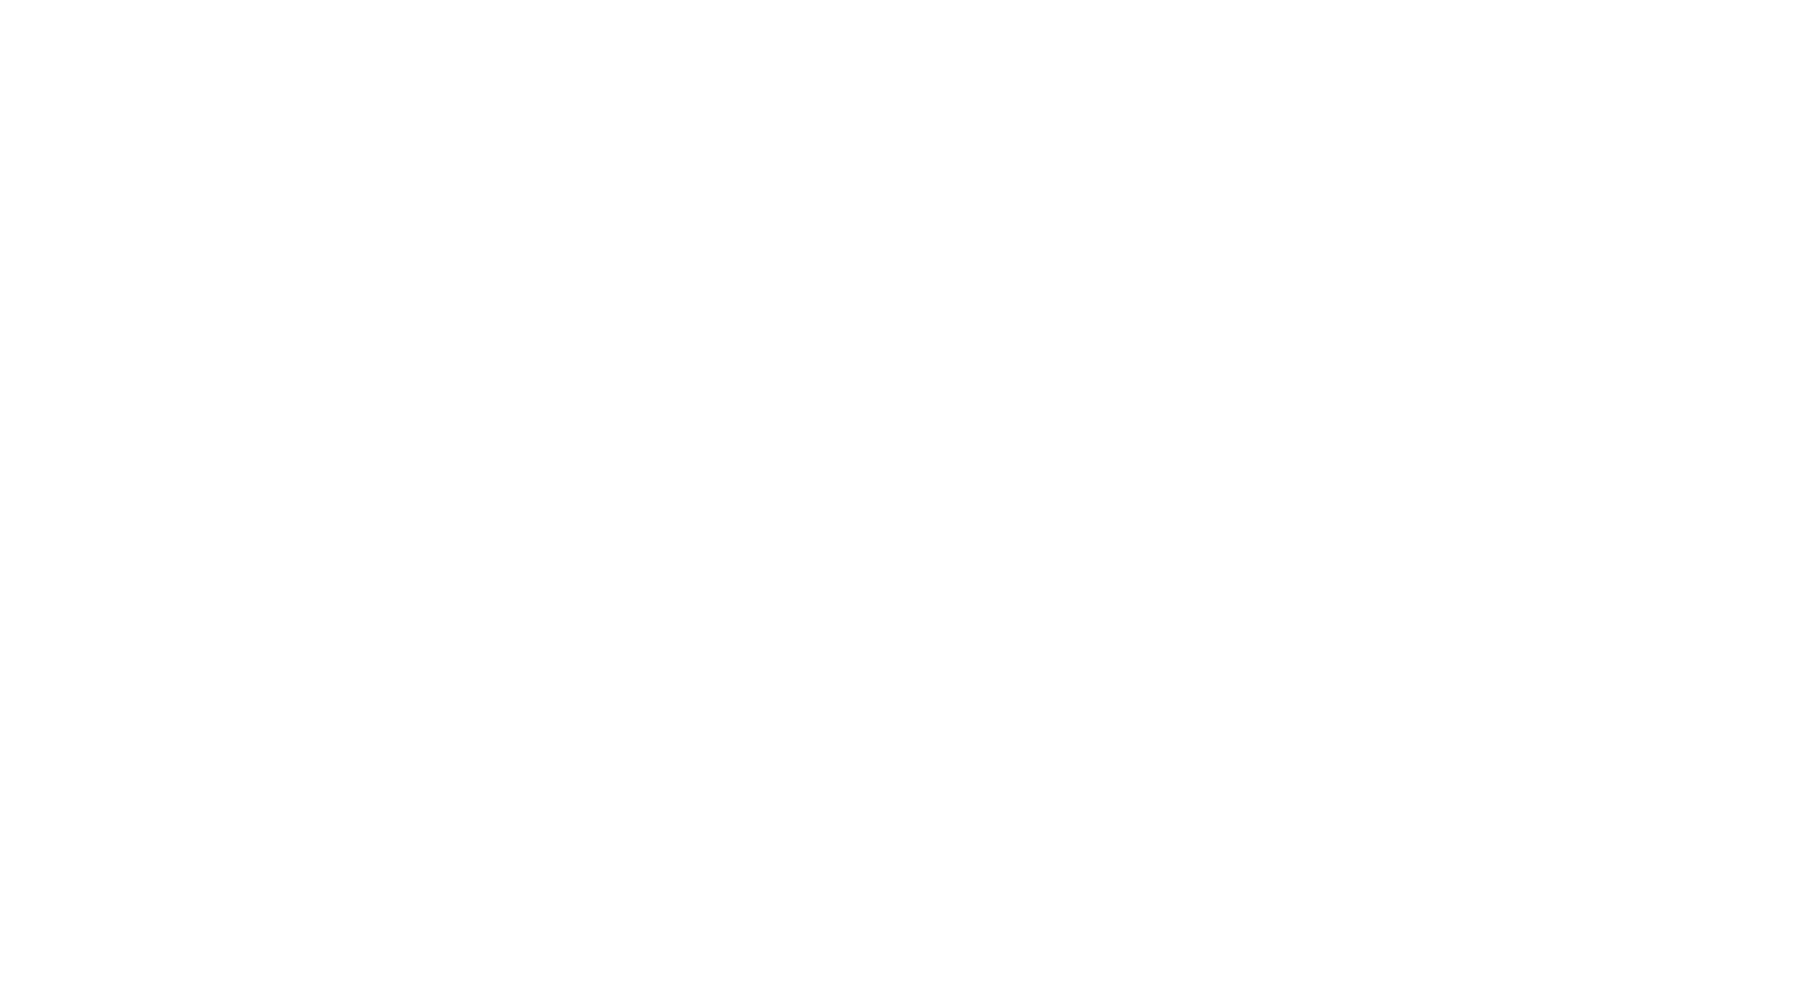 CLMP